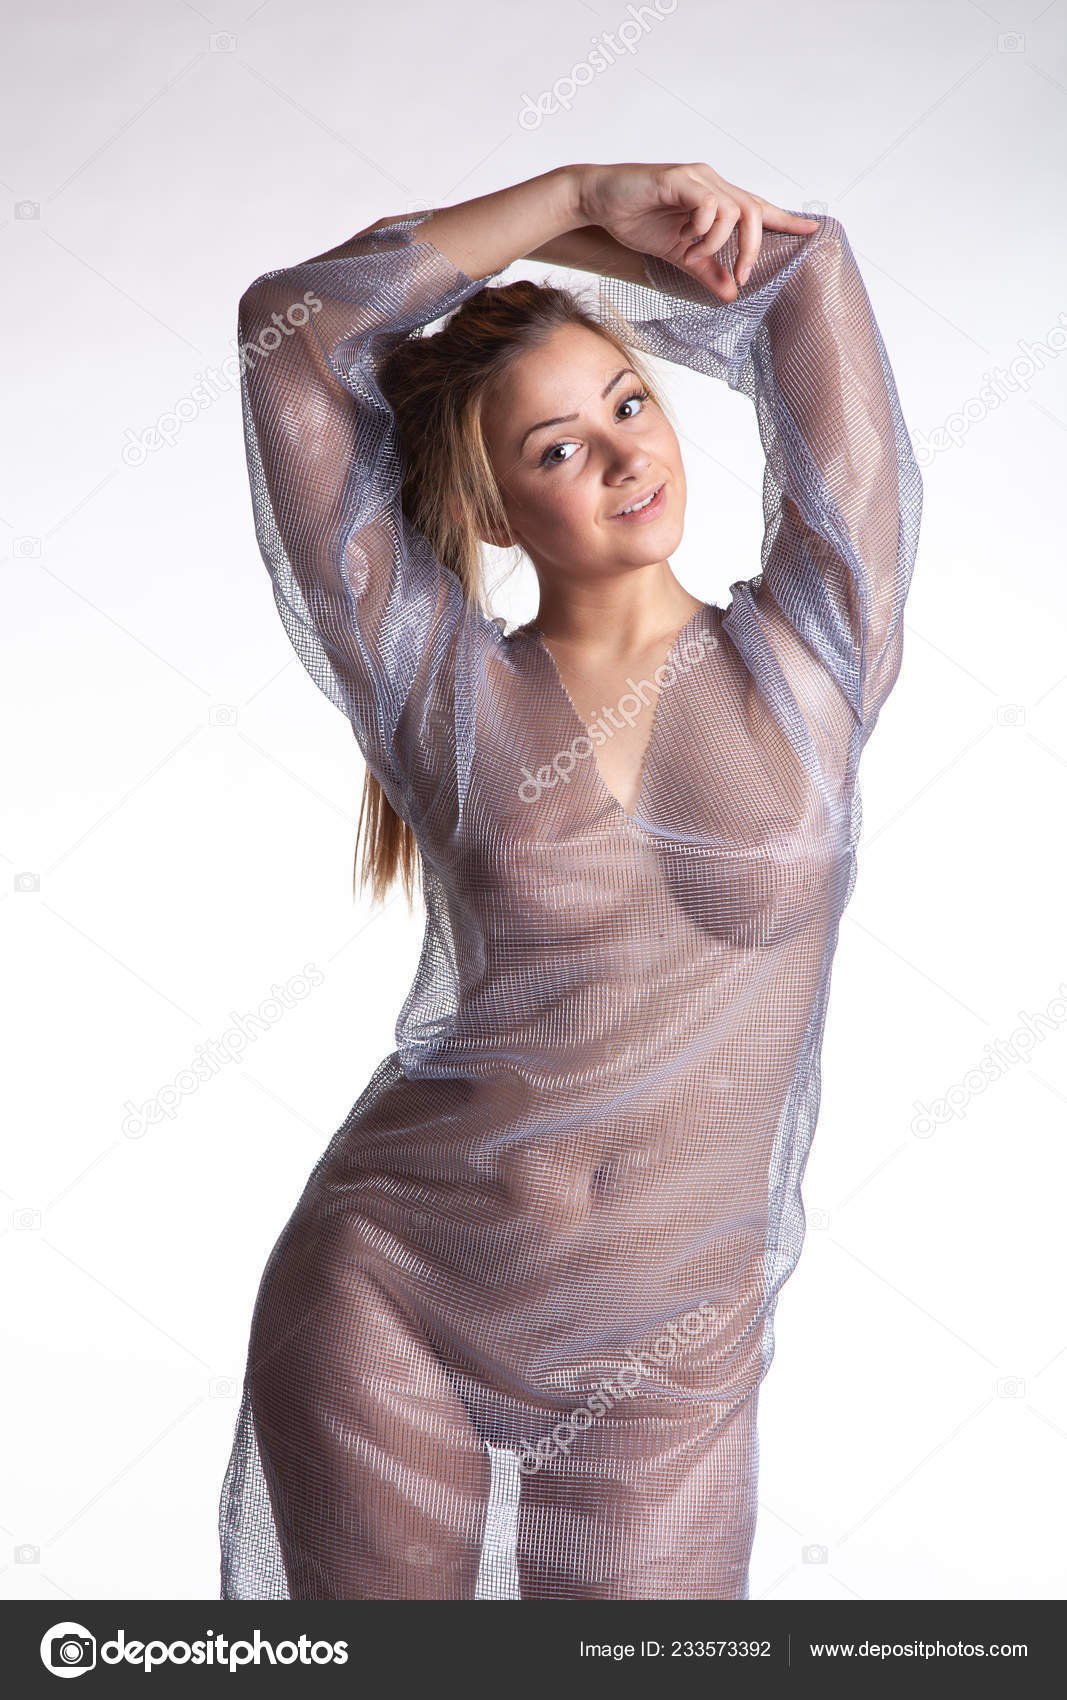 https://st4n.depositphotos.com/10086424/23357/i/1600/depositphotos_233573392-stock-photo-young-beautiful-girl-posing-nude.jpg